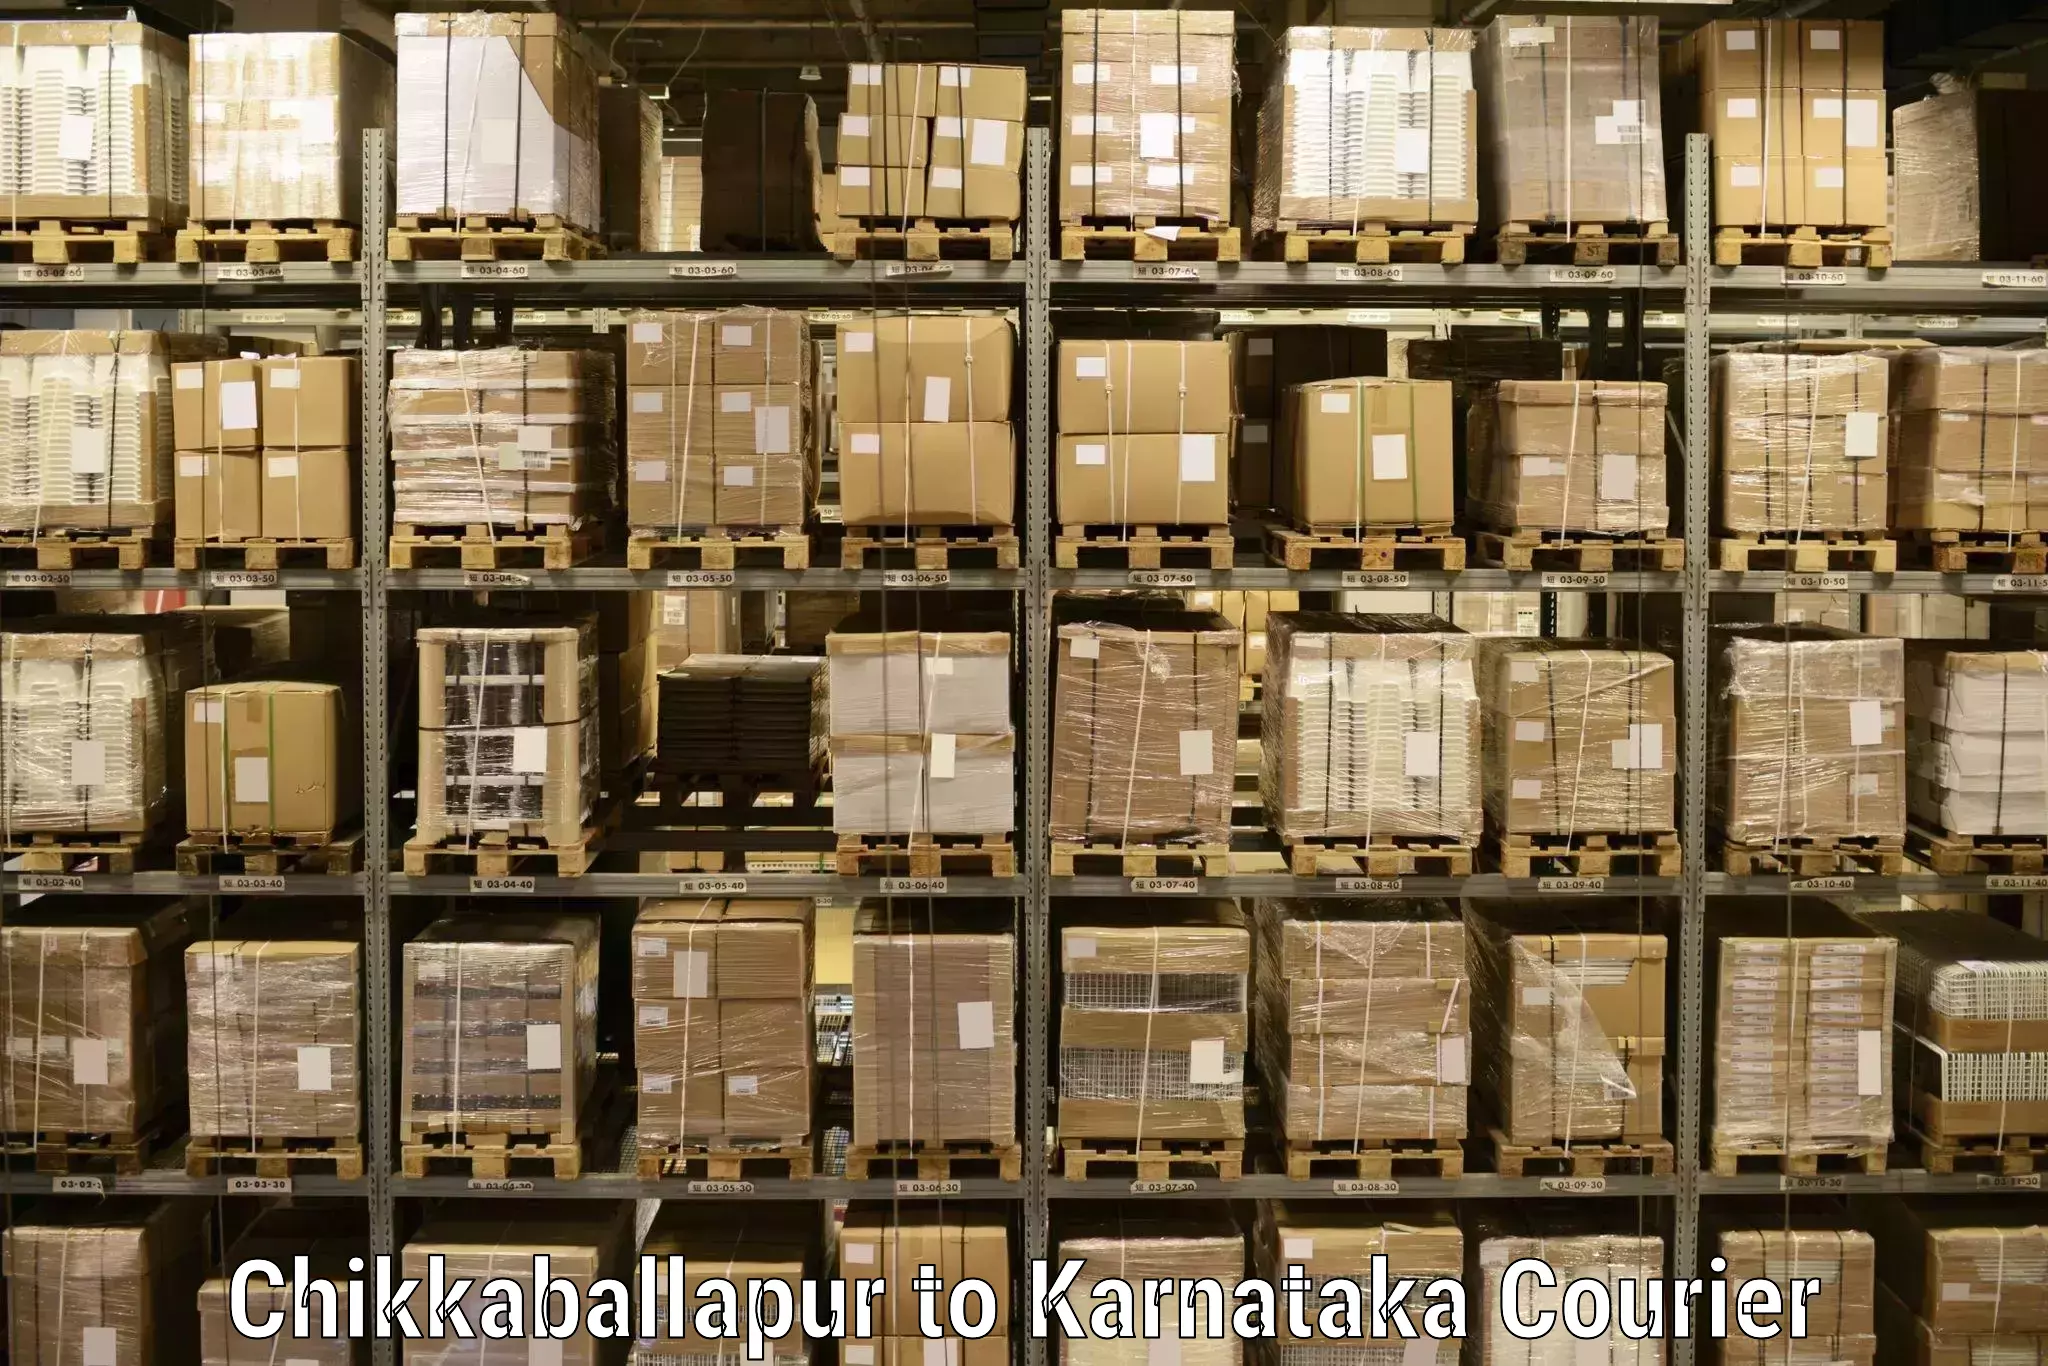 Personal parcel delivery Chikkaballapur to Navalgund